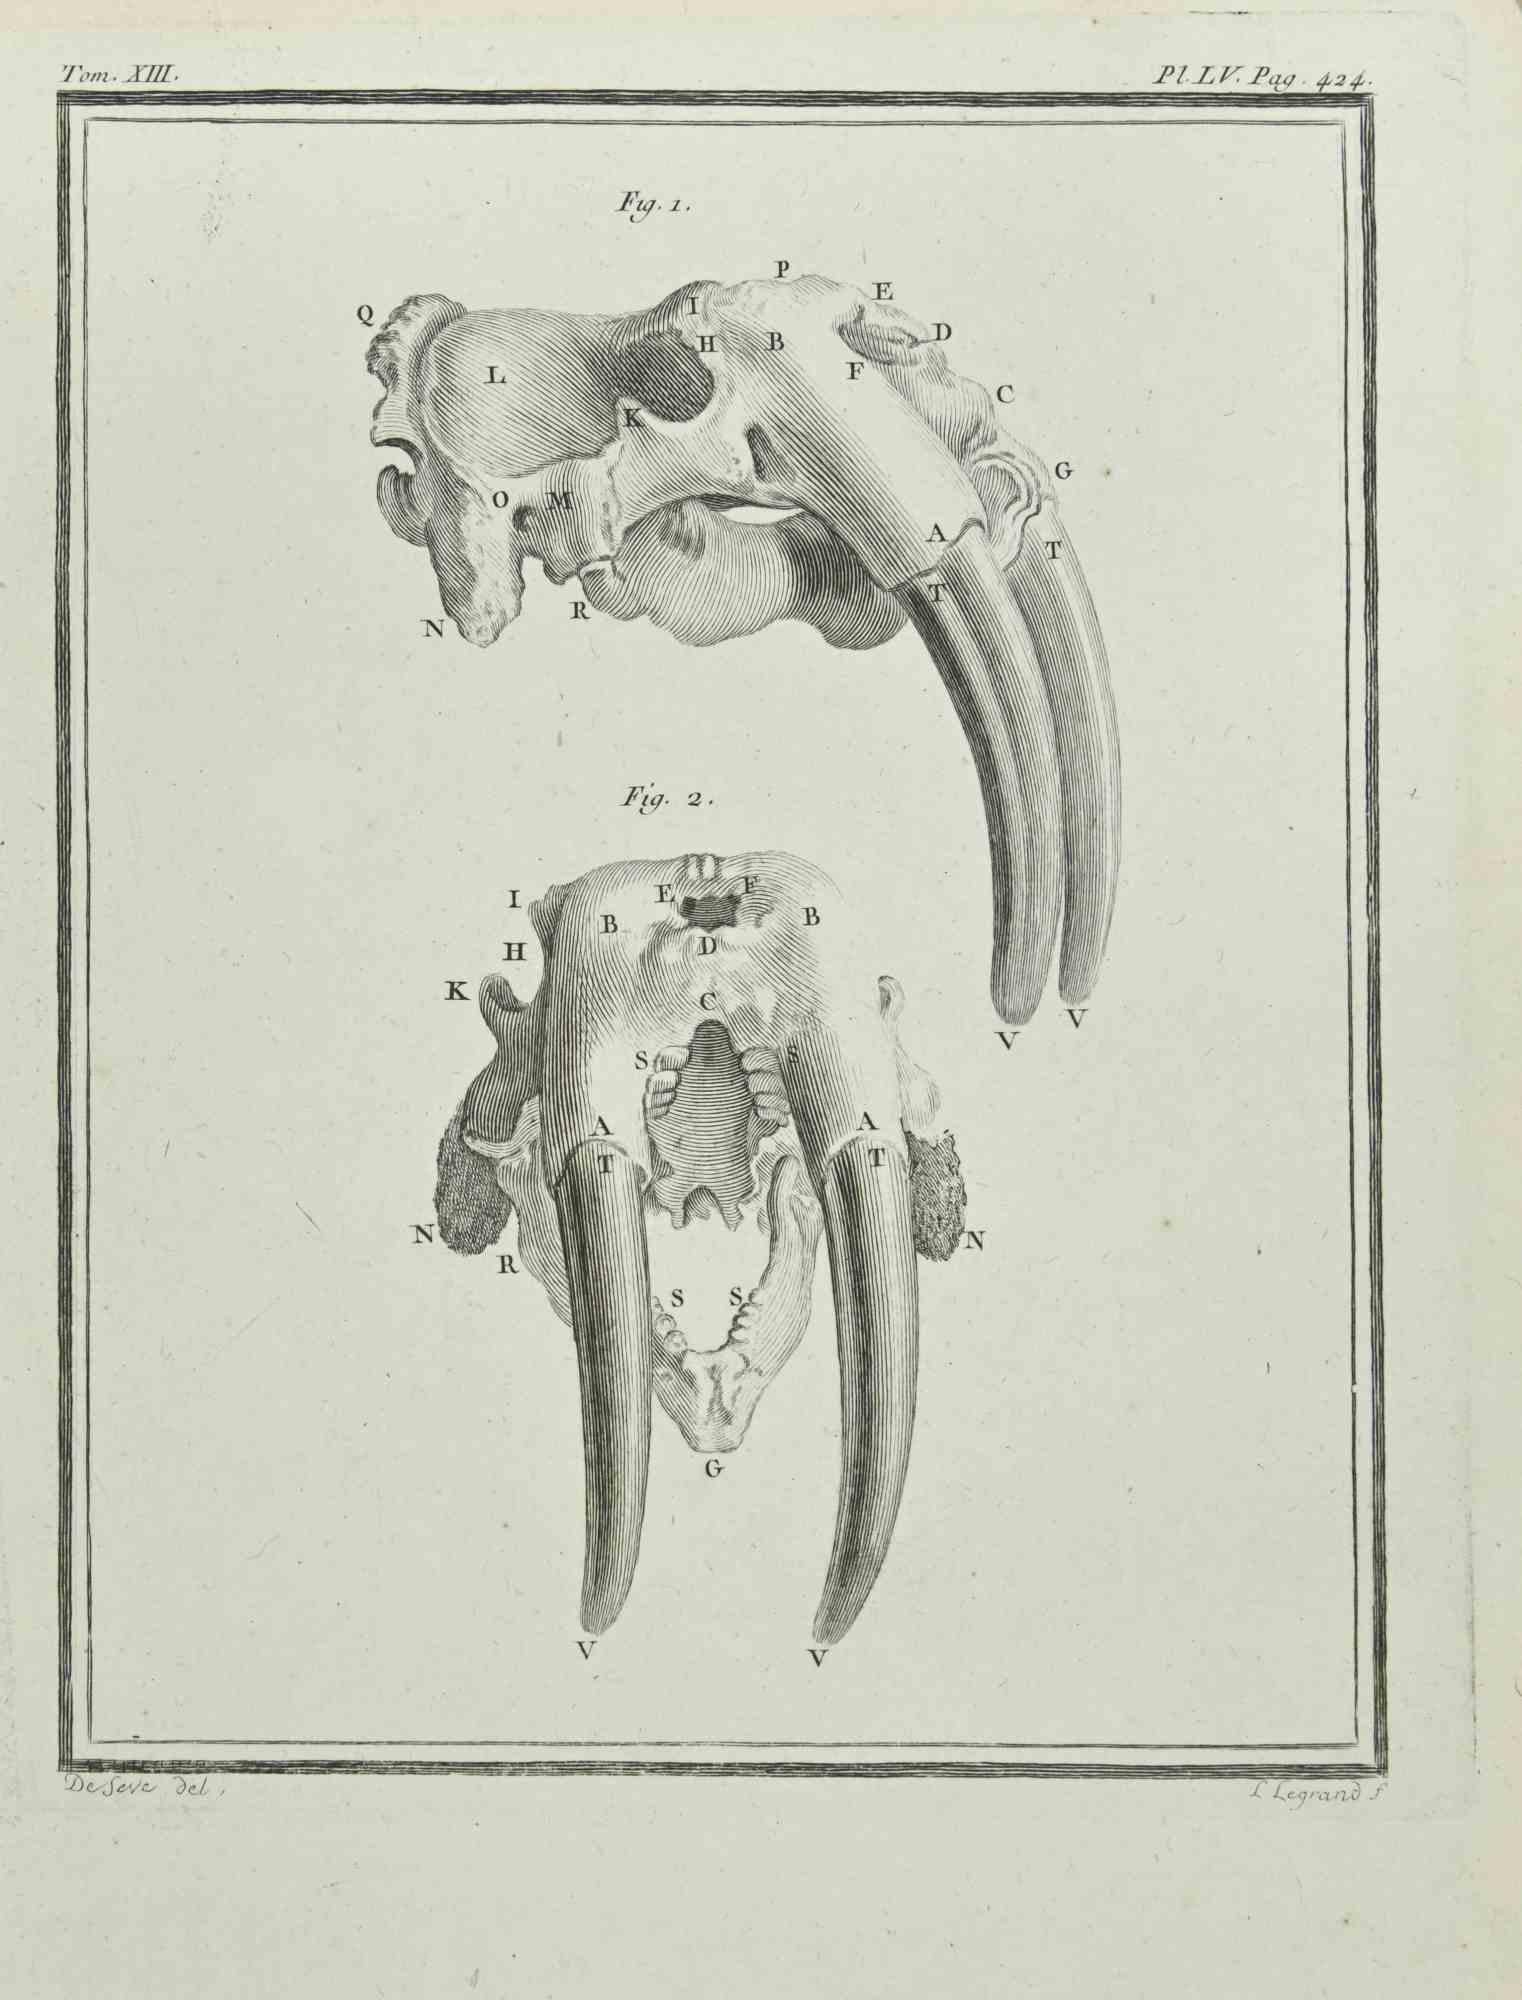 Das Skelett eines Tieres ist eine Radierung aus dem Jahr 1771 von Louis Legrand (1723-1807).

In der Platte signiert.

Das Kunstwerk gehört zu der Suite "Histoire naturelle, générale et particulière avec la description du Cabinet du Roi". Paris: